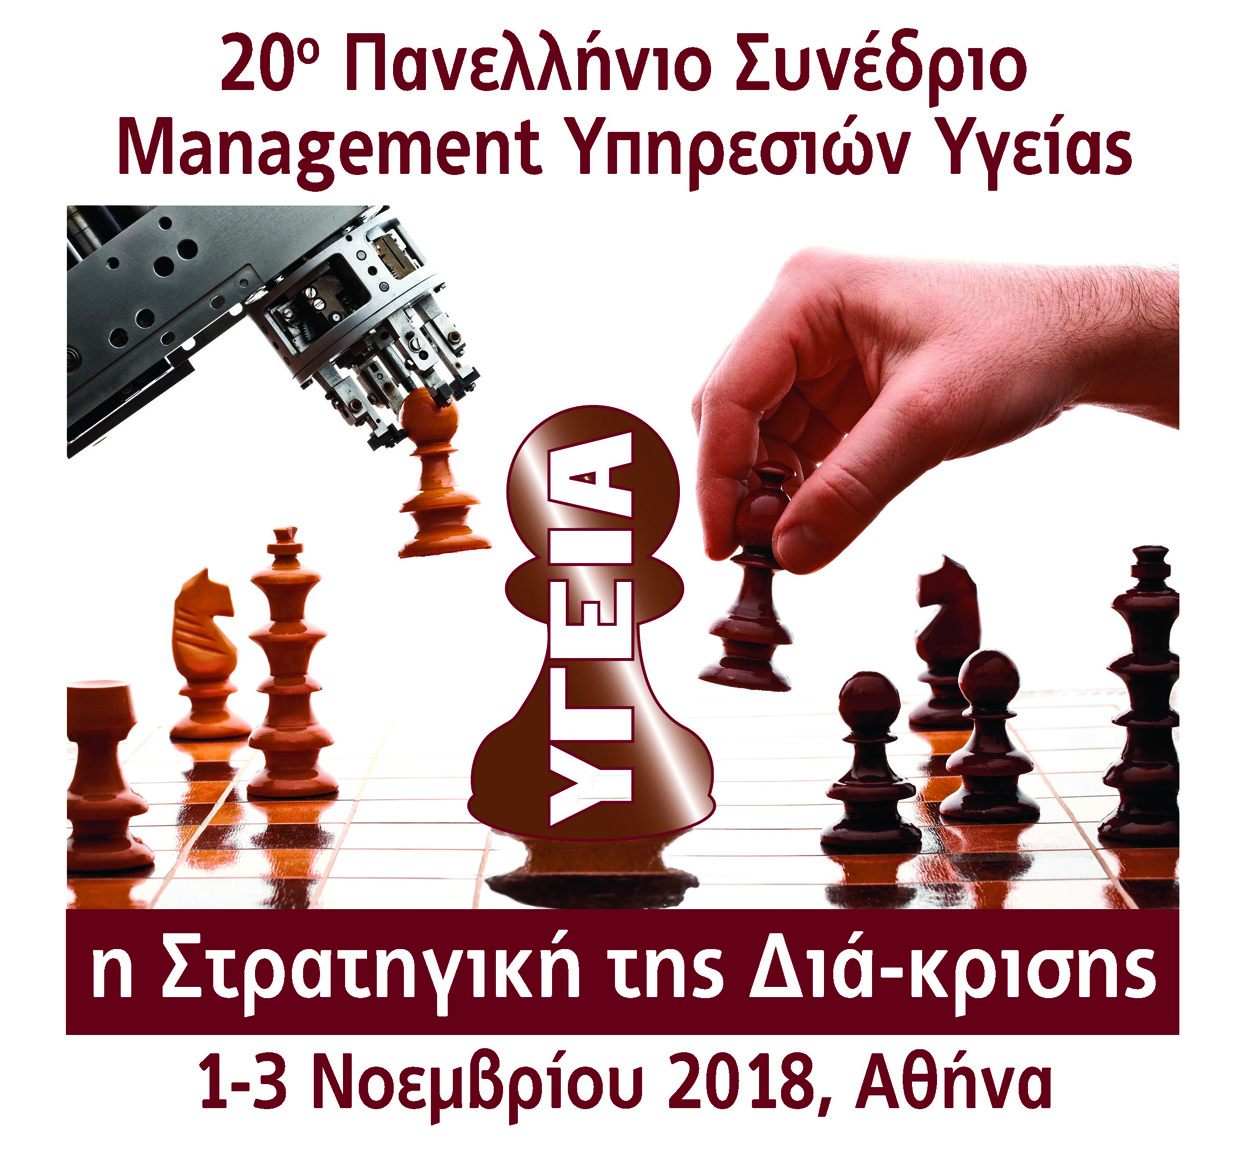 Υπό την αιγίδα του υπουργείου Υγείας το 20ο συνέδριο της Ελληνικής Εταιρείας Management Υπηρεσιών Υγείας